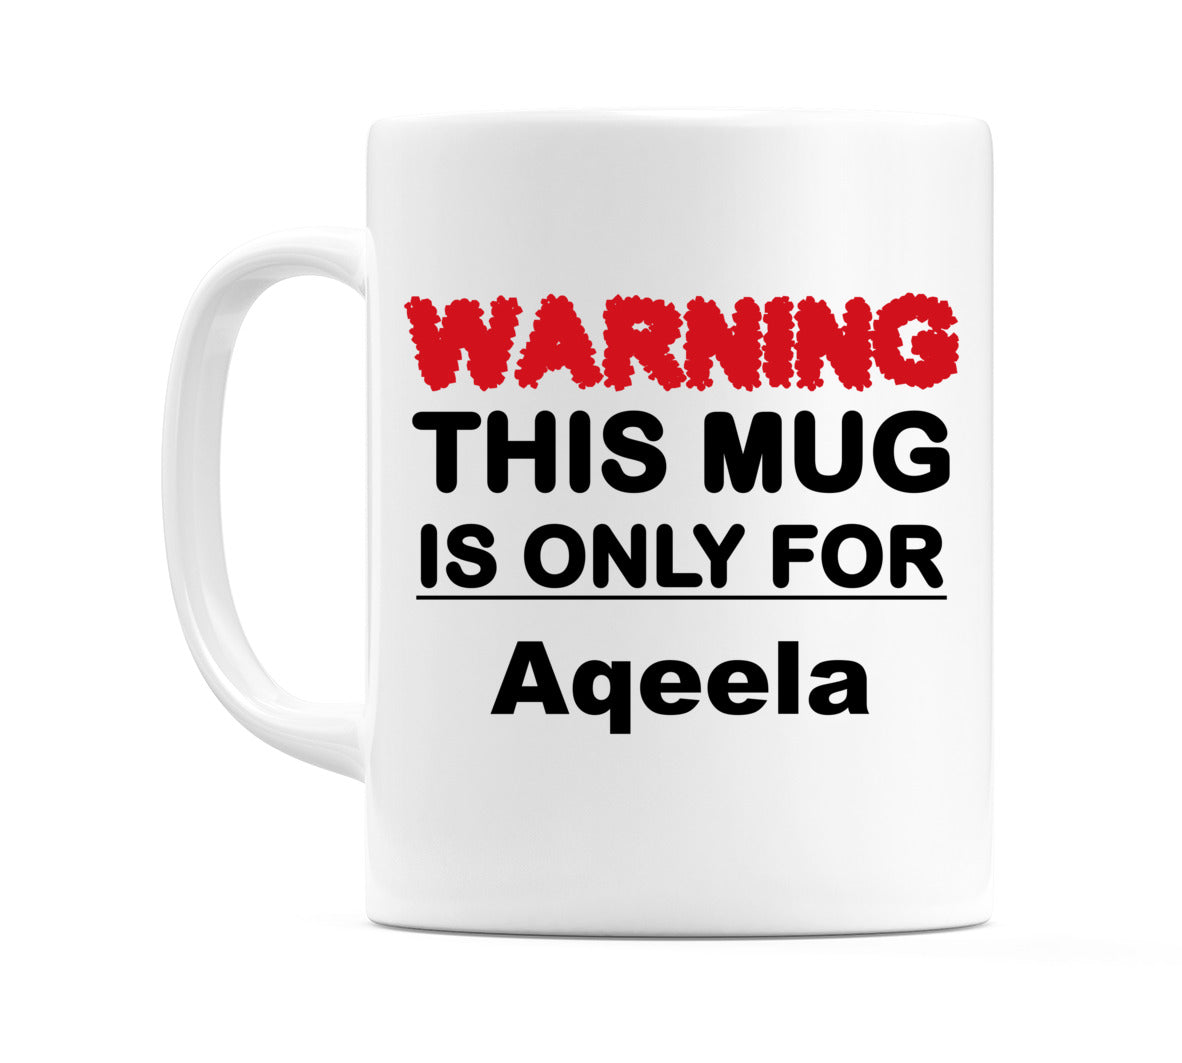 Warning This Mug is ONLY for Aqeela Mug